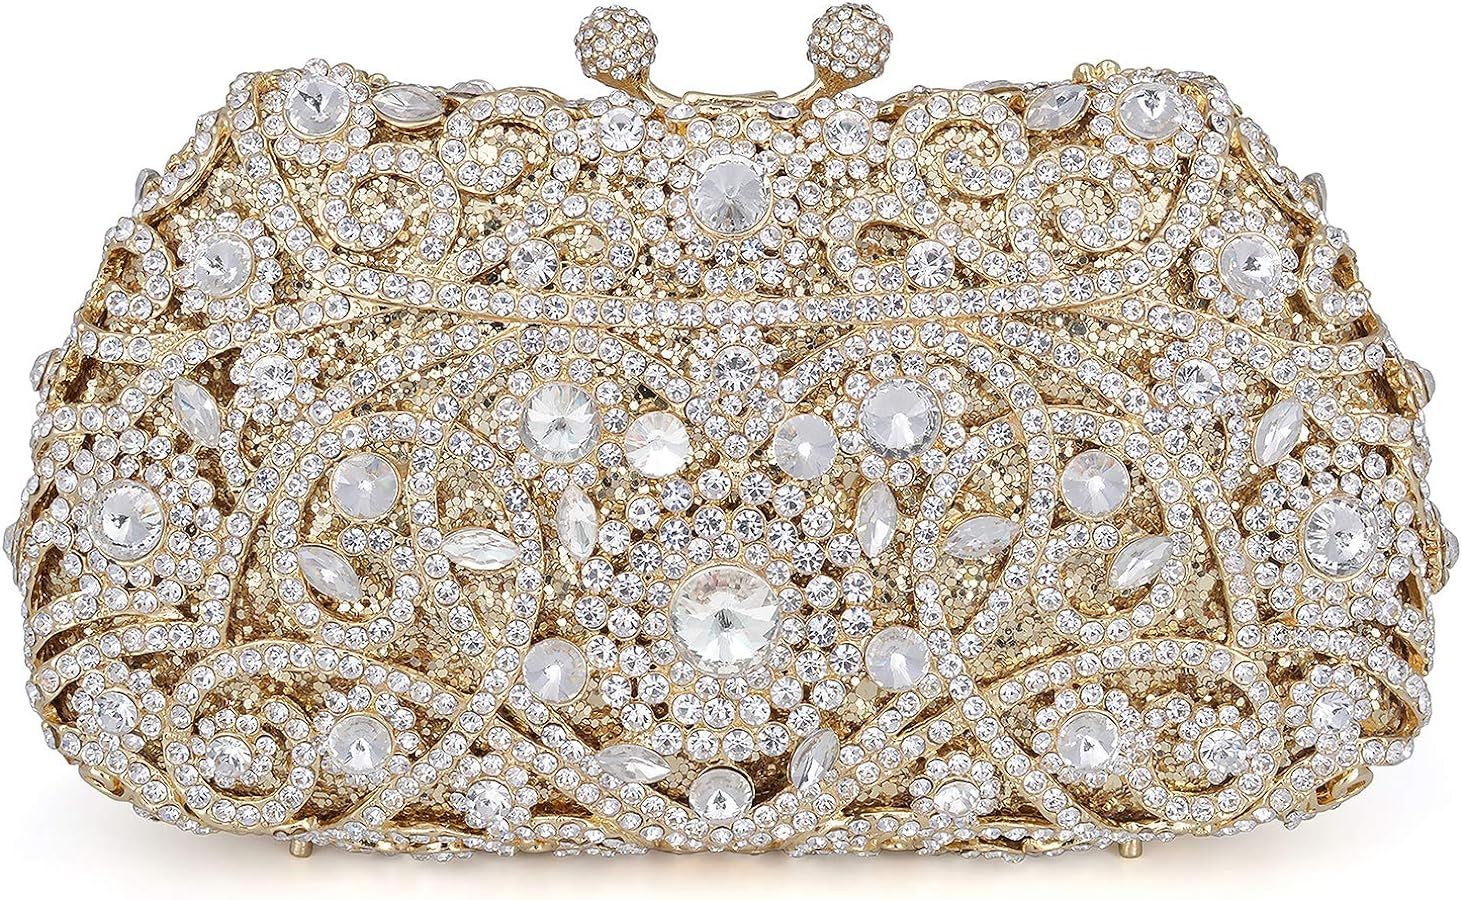 MOSSMON Formal Rhinestone Crystal Clutch Evening Wedding Bag For Women | Amazon (US)